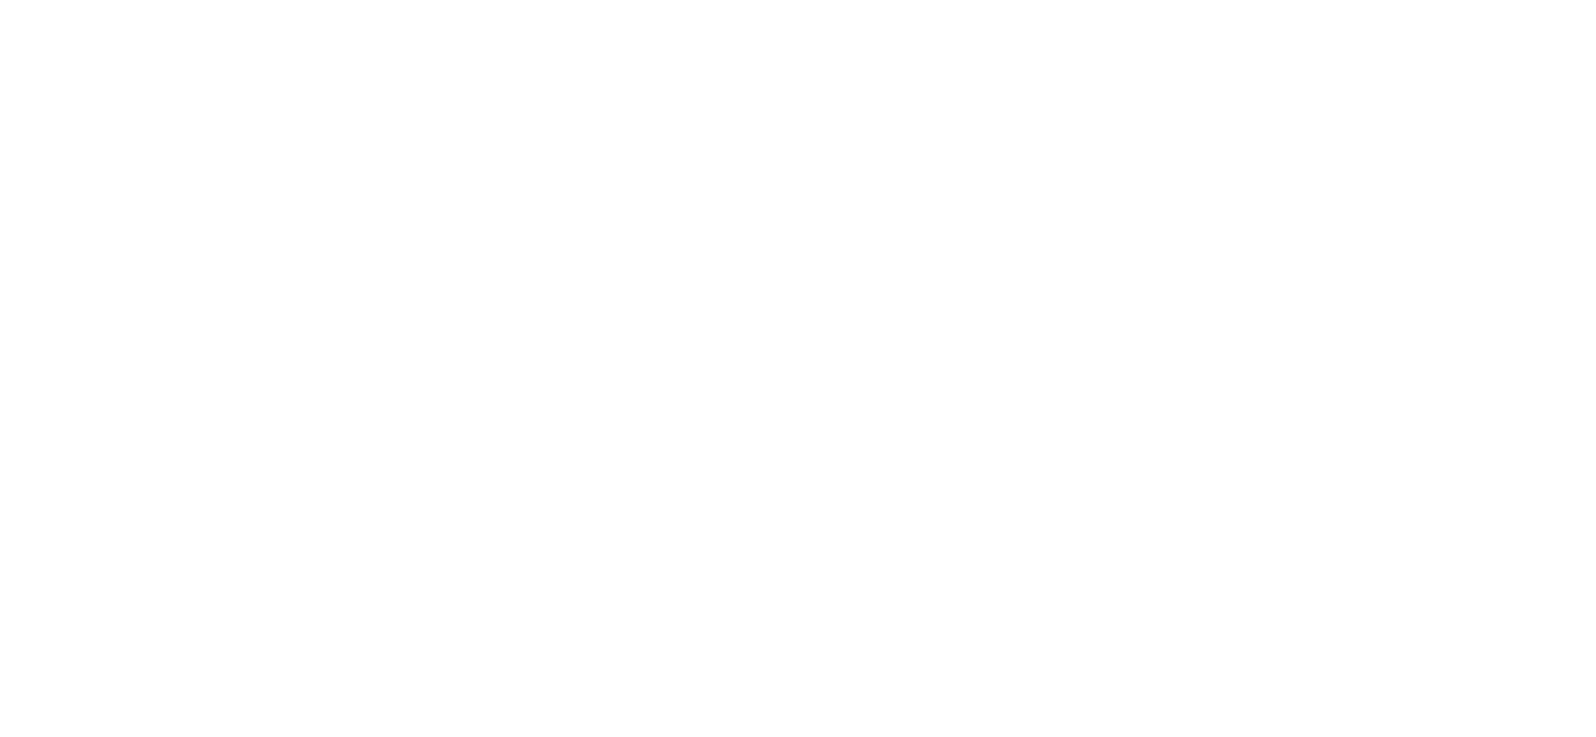 Uka: Hair & Make-up: Allan Kock Shimis: La Cosa Divina Joa: Hair & Make-up: Jennyree Geerman Shimis: Allure Bridals